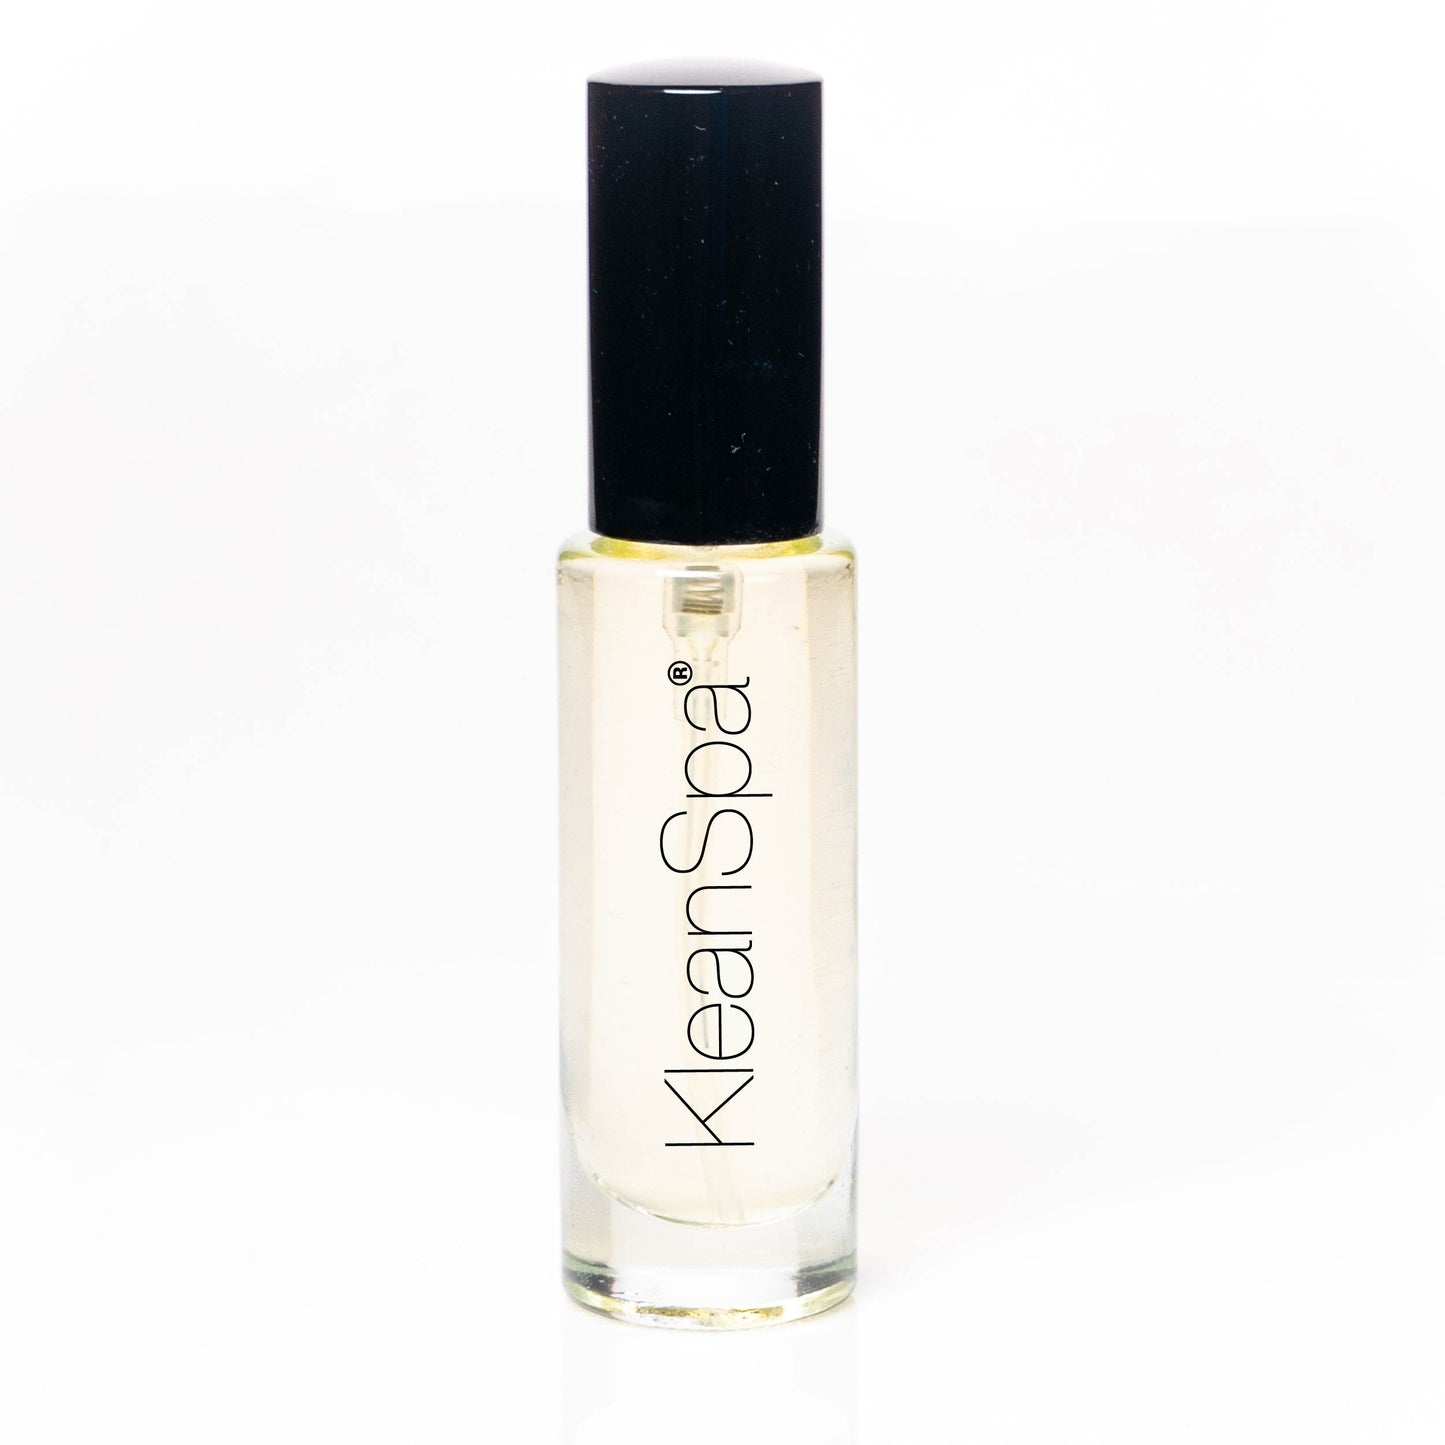 perfume: eau de parfum (20% fragrance) new!